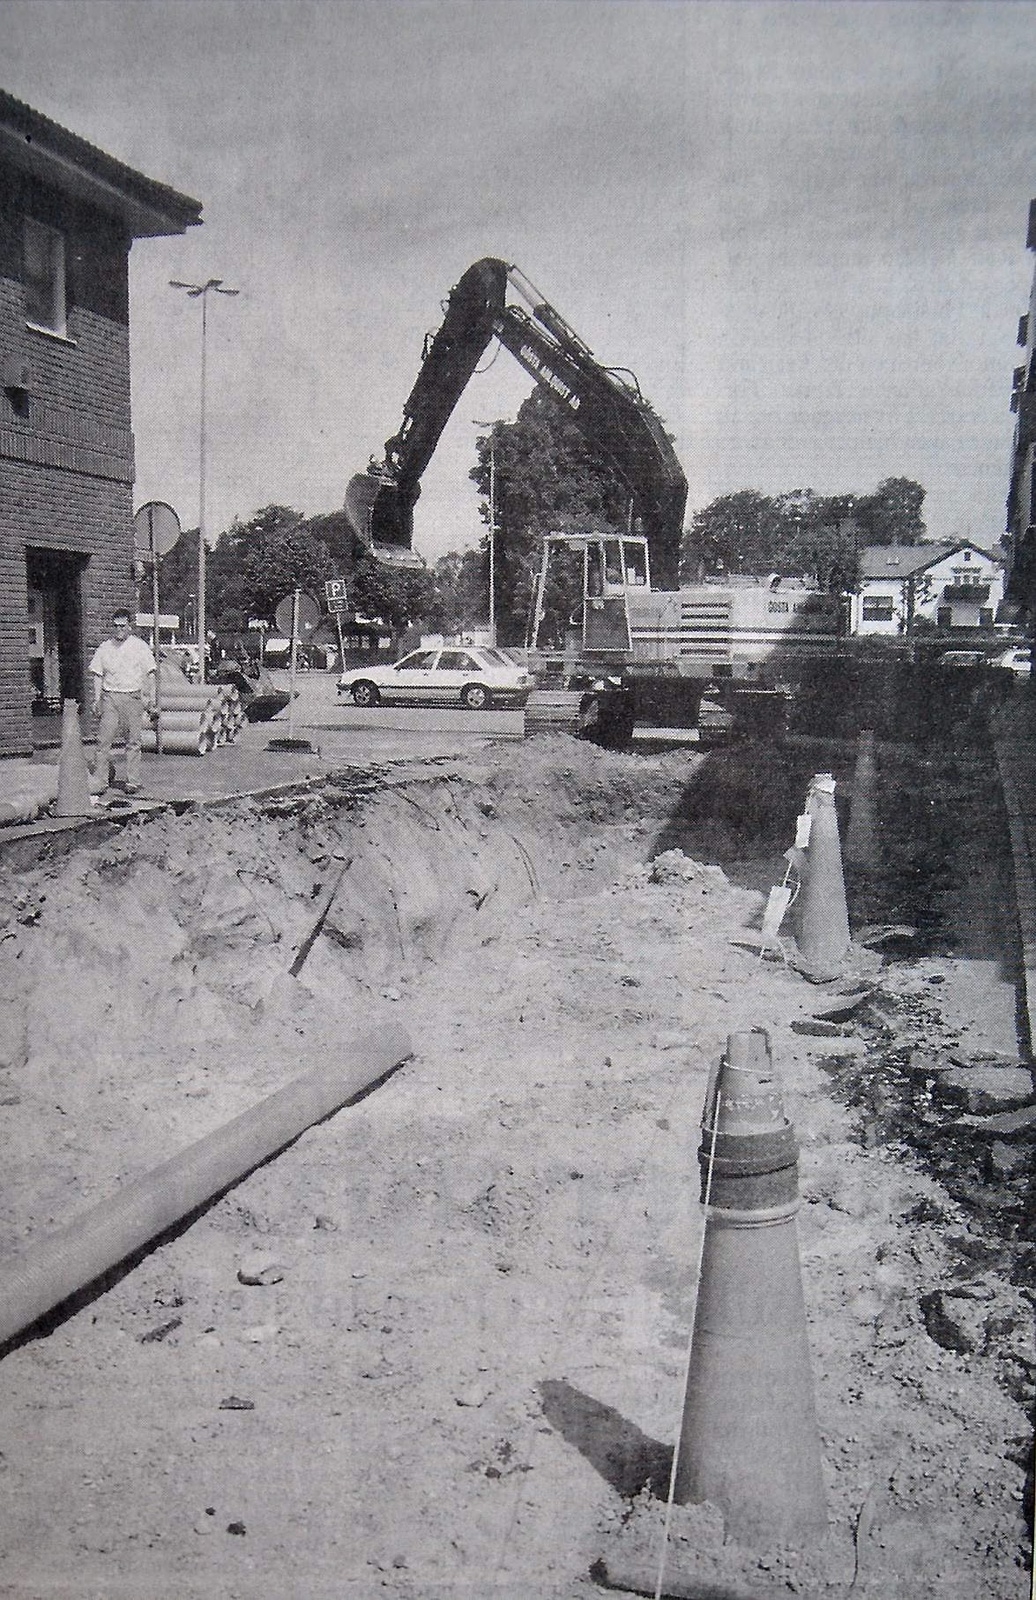 Det grävs för fullt i gatorna i centrala Tyringe och centrum kommer stundvis vara avstängt för trafik.
Arkiv: Jonas Karlsson